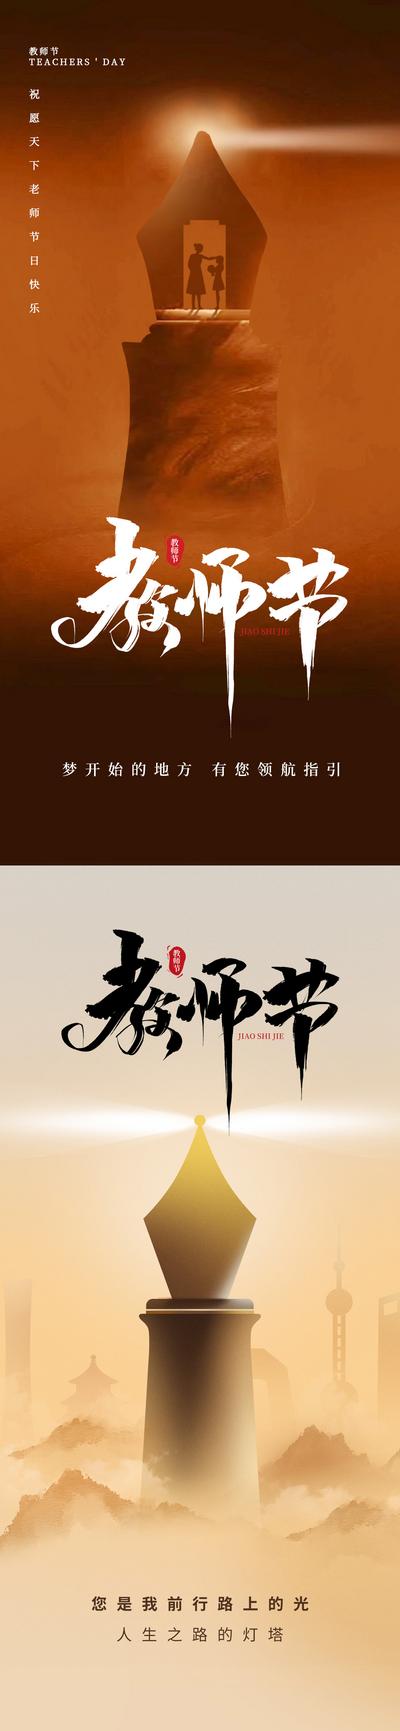 南门网 广告 海报 地产 教师节 书本 台灯 钢笔 节日 系列